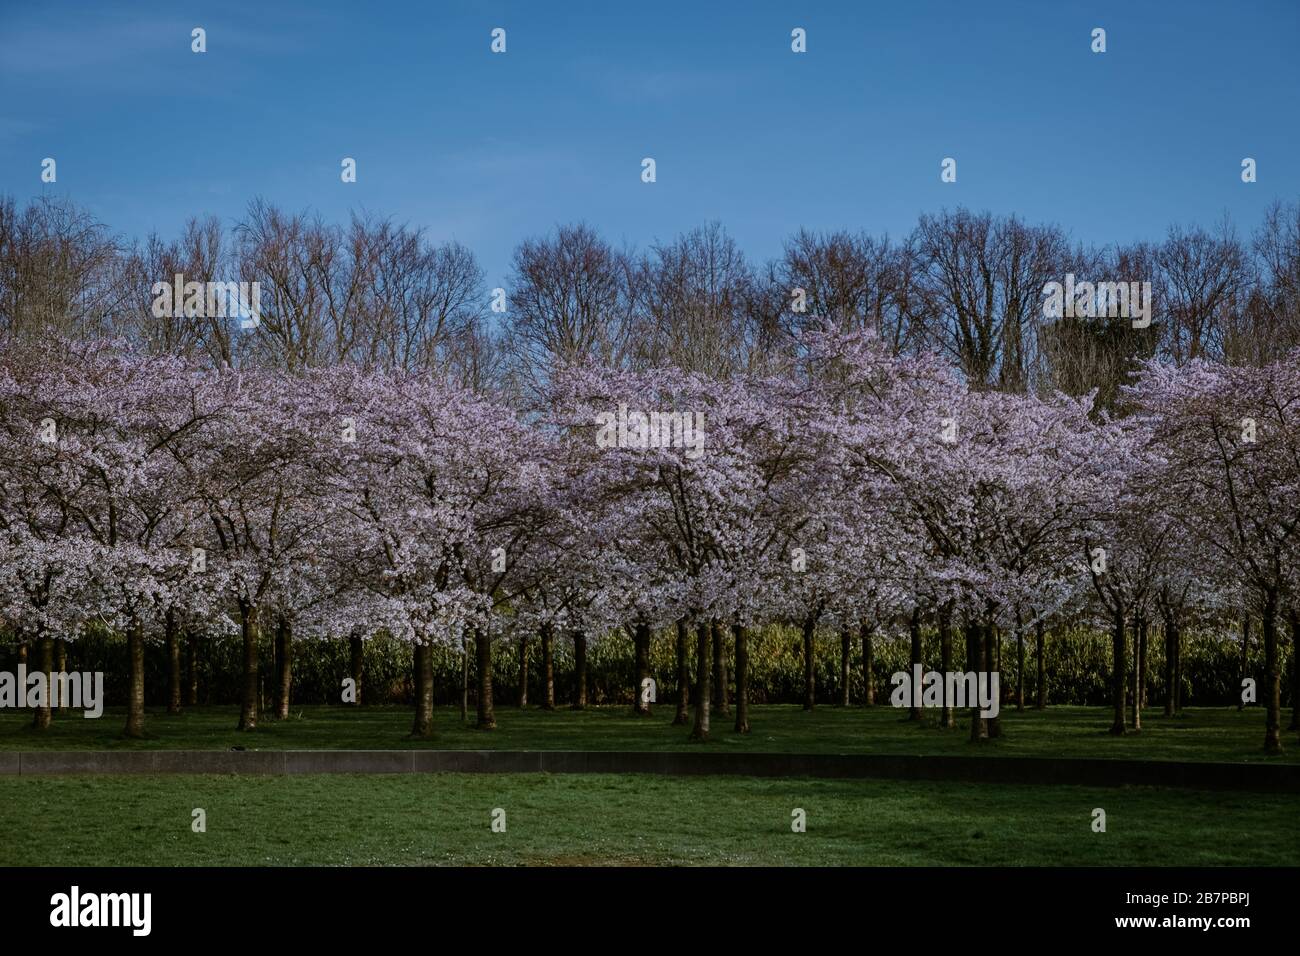 Kersenbloesempark traduzione parco dei fiori ci sono 400 alberi di ciliegio in Amsterdam Bos, in primavera si può godere la bella fioritura dei ciliegi Foto Stock